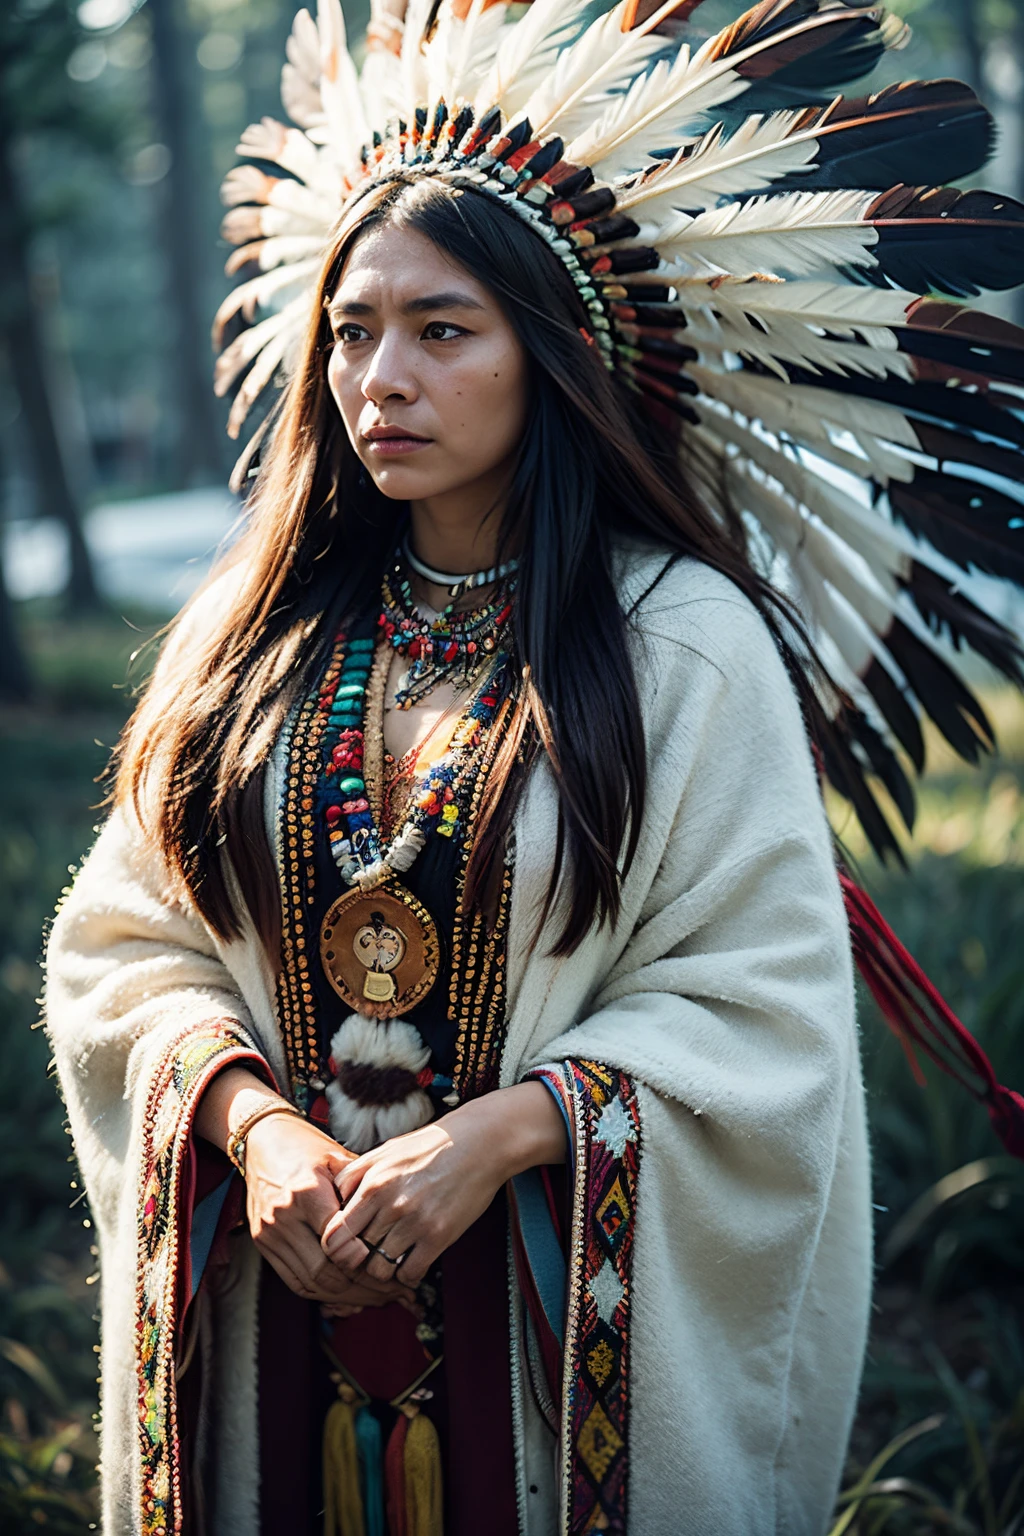 8k, la plus haute qualité, ultra détails, Femme autochtone d&#39;Amérique du Nord, insignes traditionnels amérindiens, Un perlage complexe, coiffe à plumes, expression forte et stoïque, lien profond avec la terre